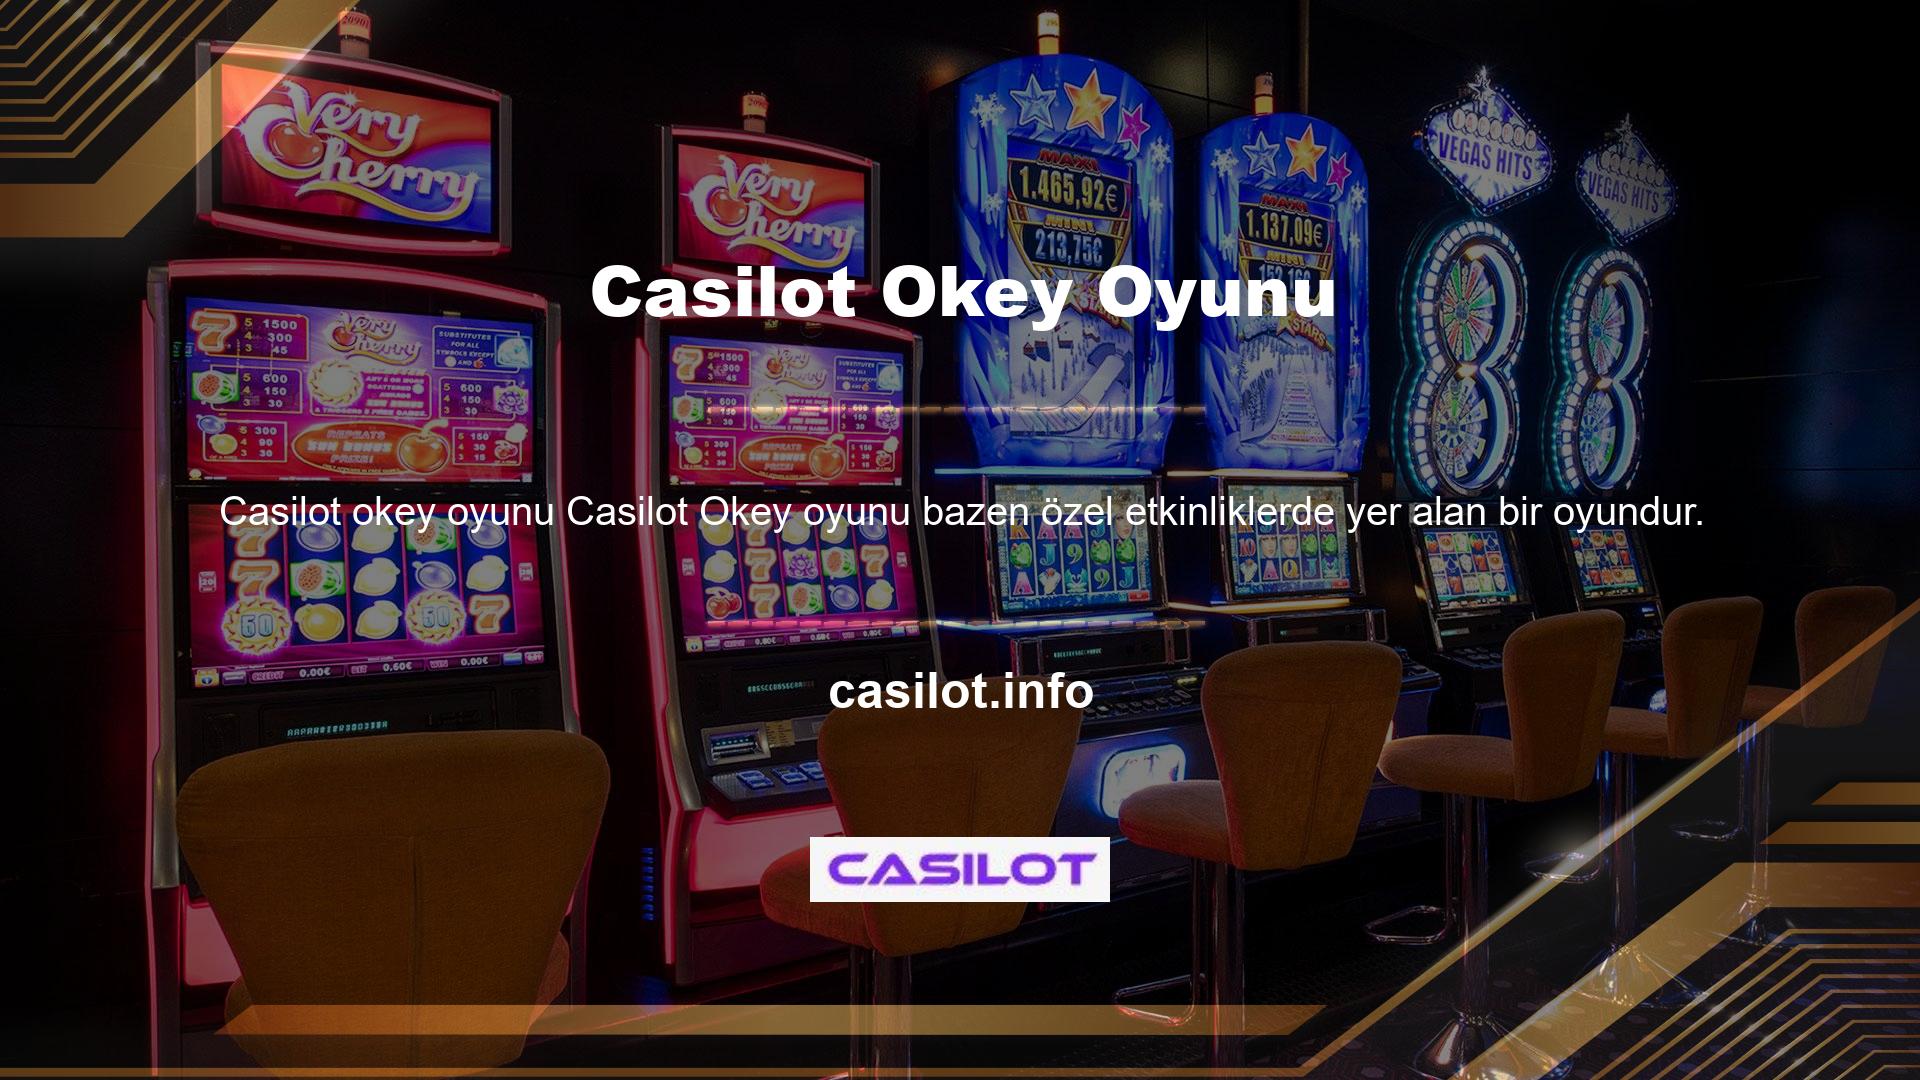 Casilot Organizasyon bonusları ve kampanyaları kategori bazlı veya oyun bazlı olabilir